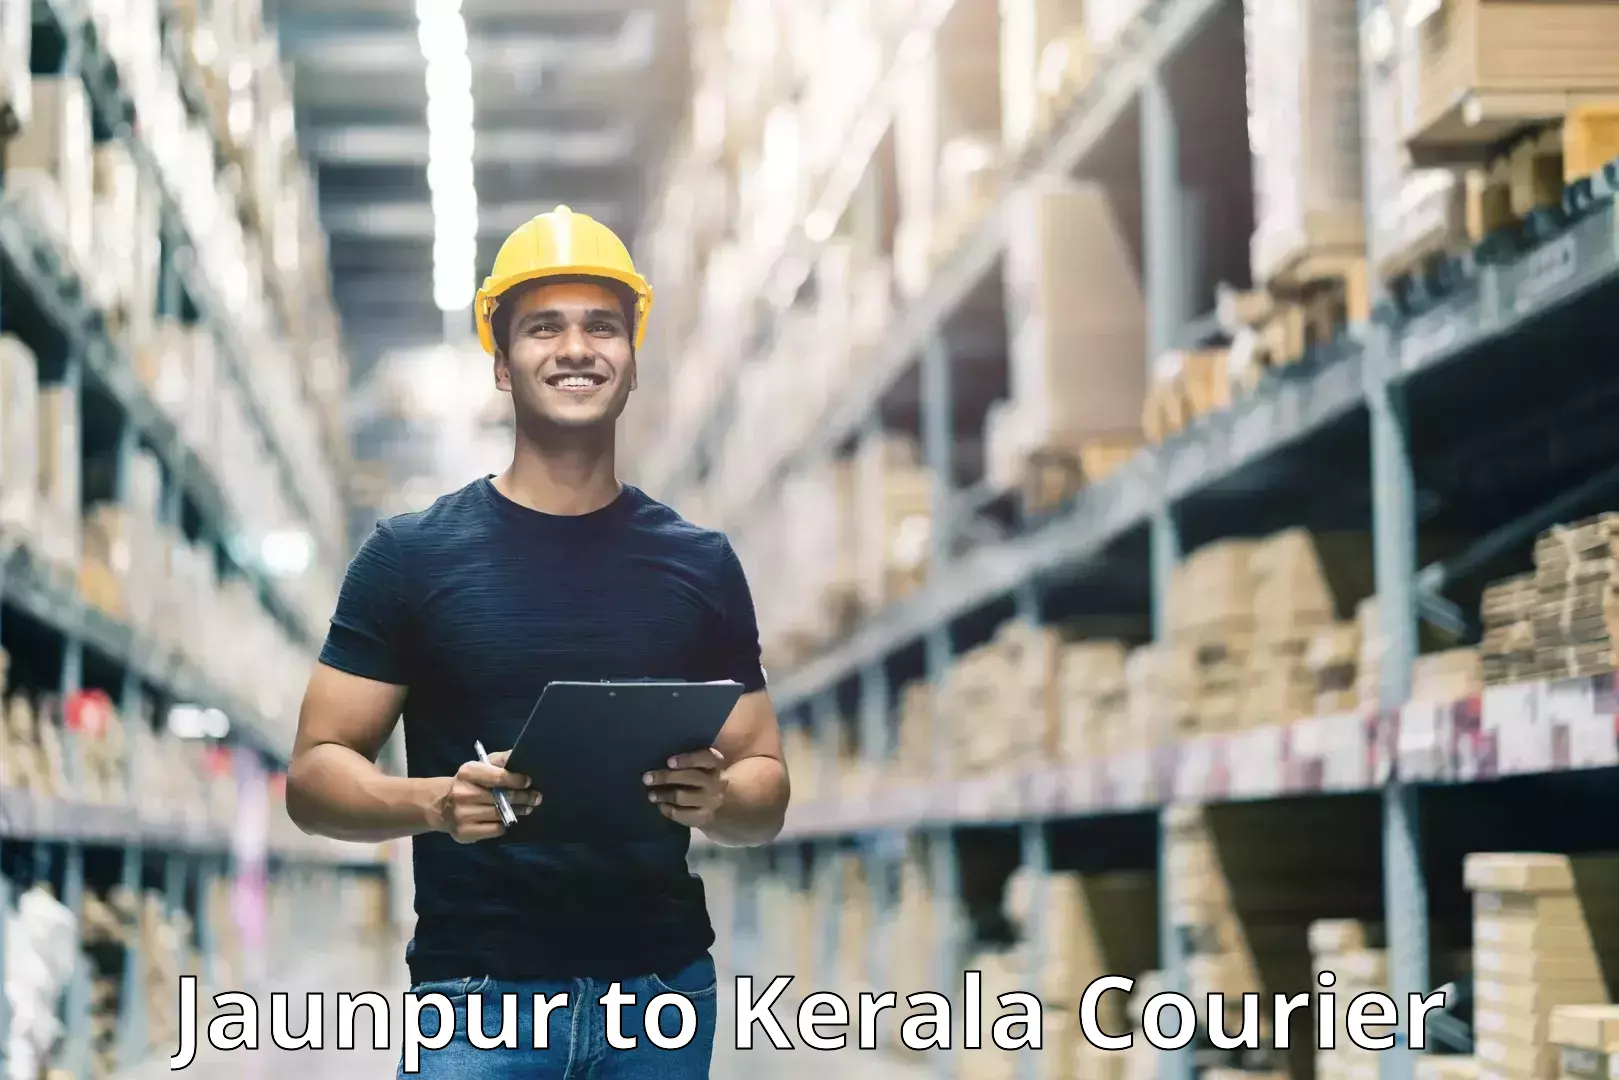 Next-generation courier services Jaunpur to Kalpetta